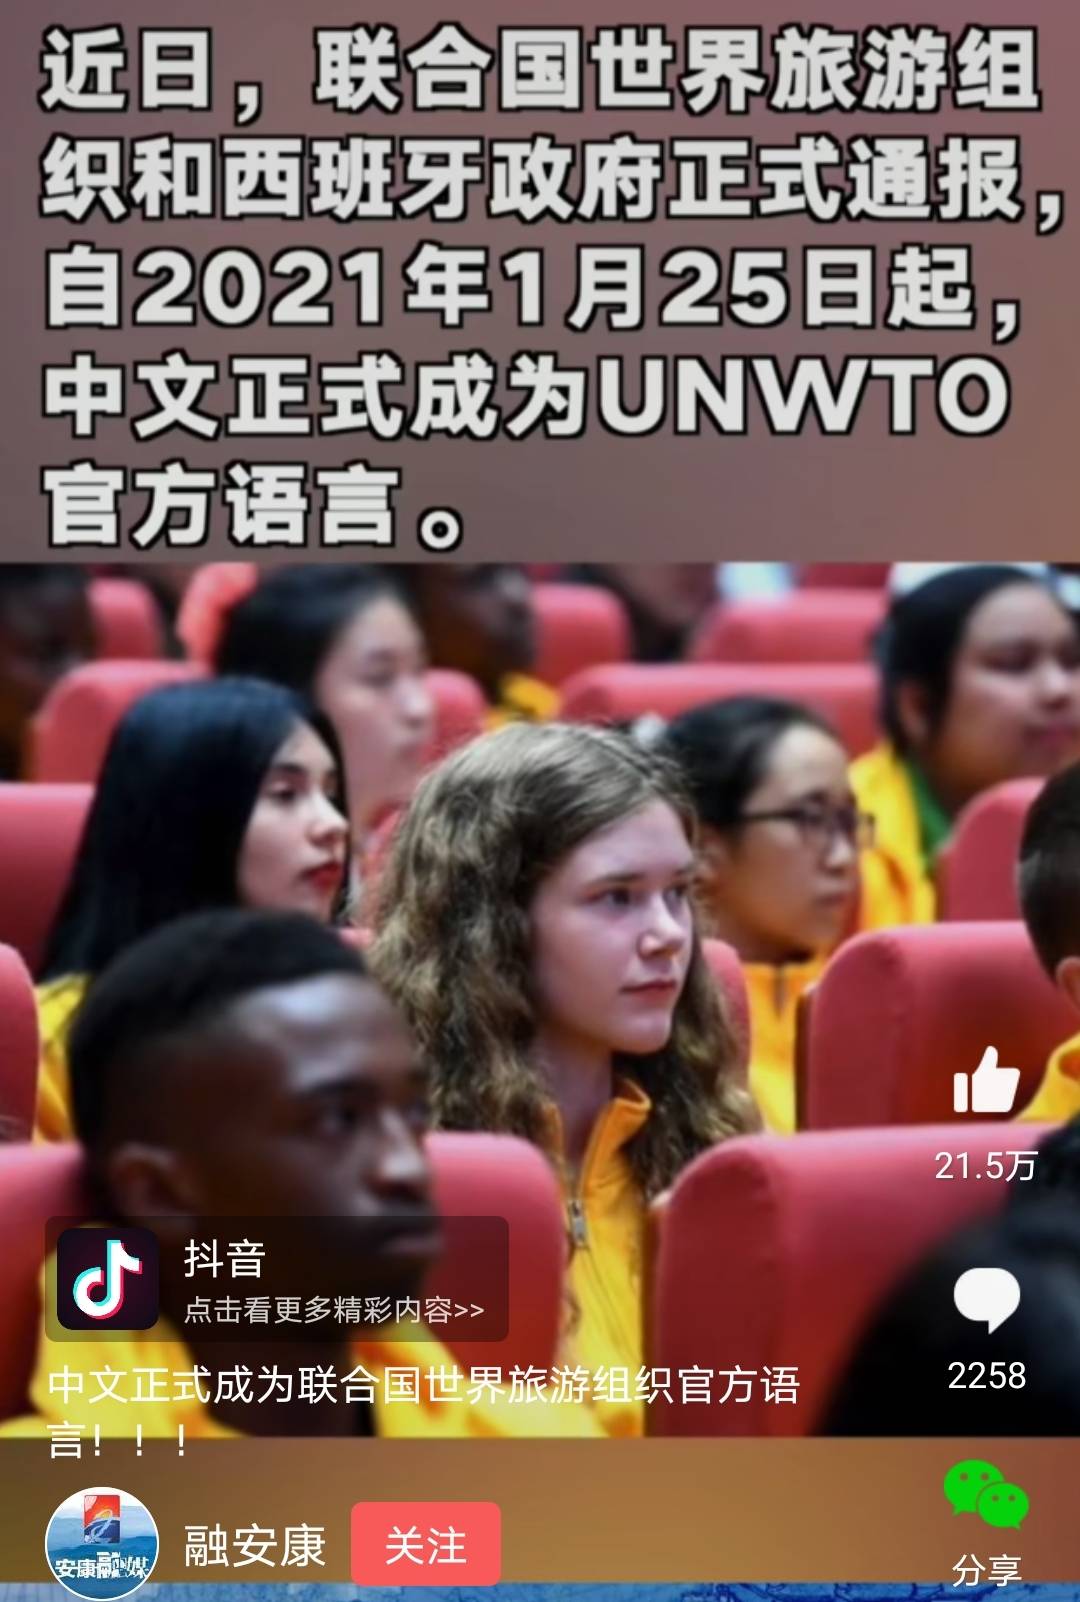 广见博闻，人间景象（2021.3.28）：中国语言